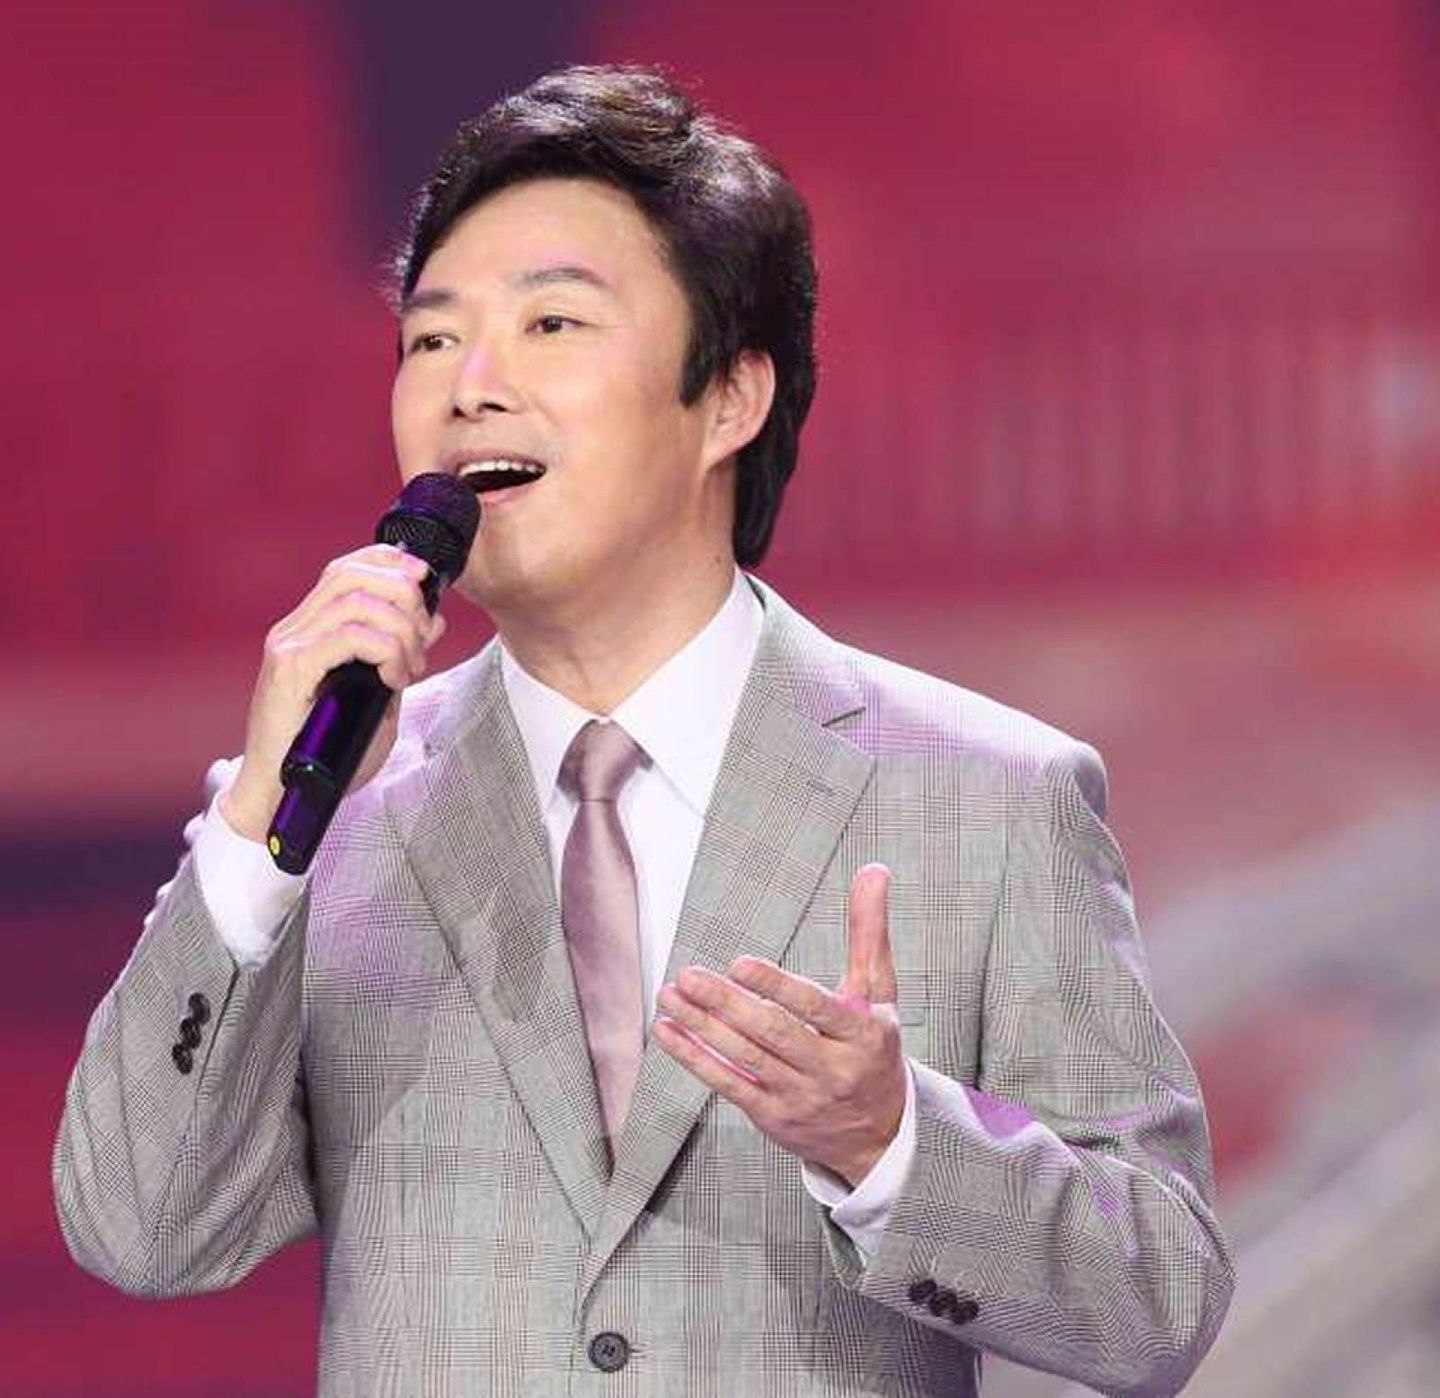 费玉清为华人乐坛知名歌手于2019年举行告别演唱会后宣布“封麦”。未料招牌歌曲《一剪梅》竟意外在欧美爆红，还登上国际音乐平台热播排行榜前三名。（百度百科）